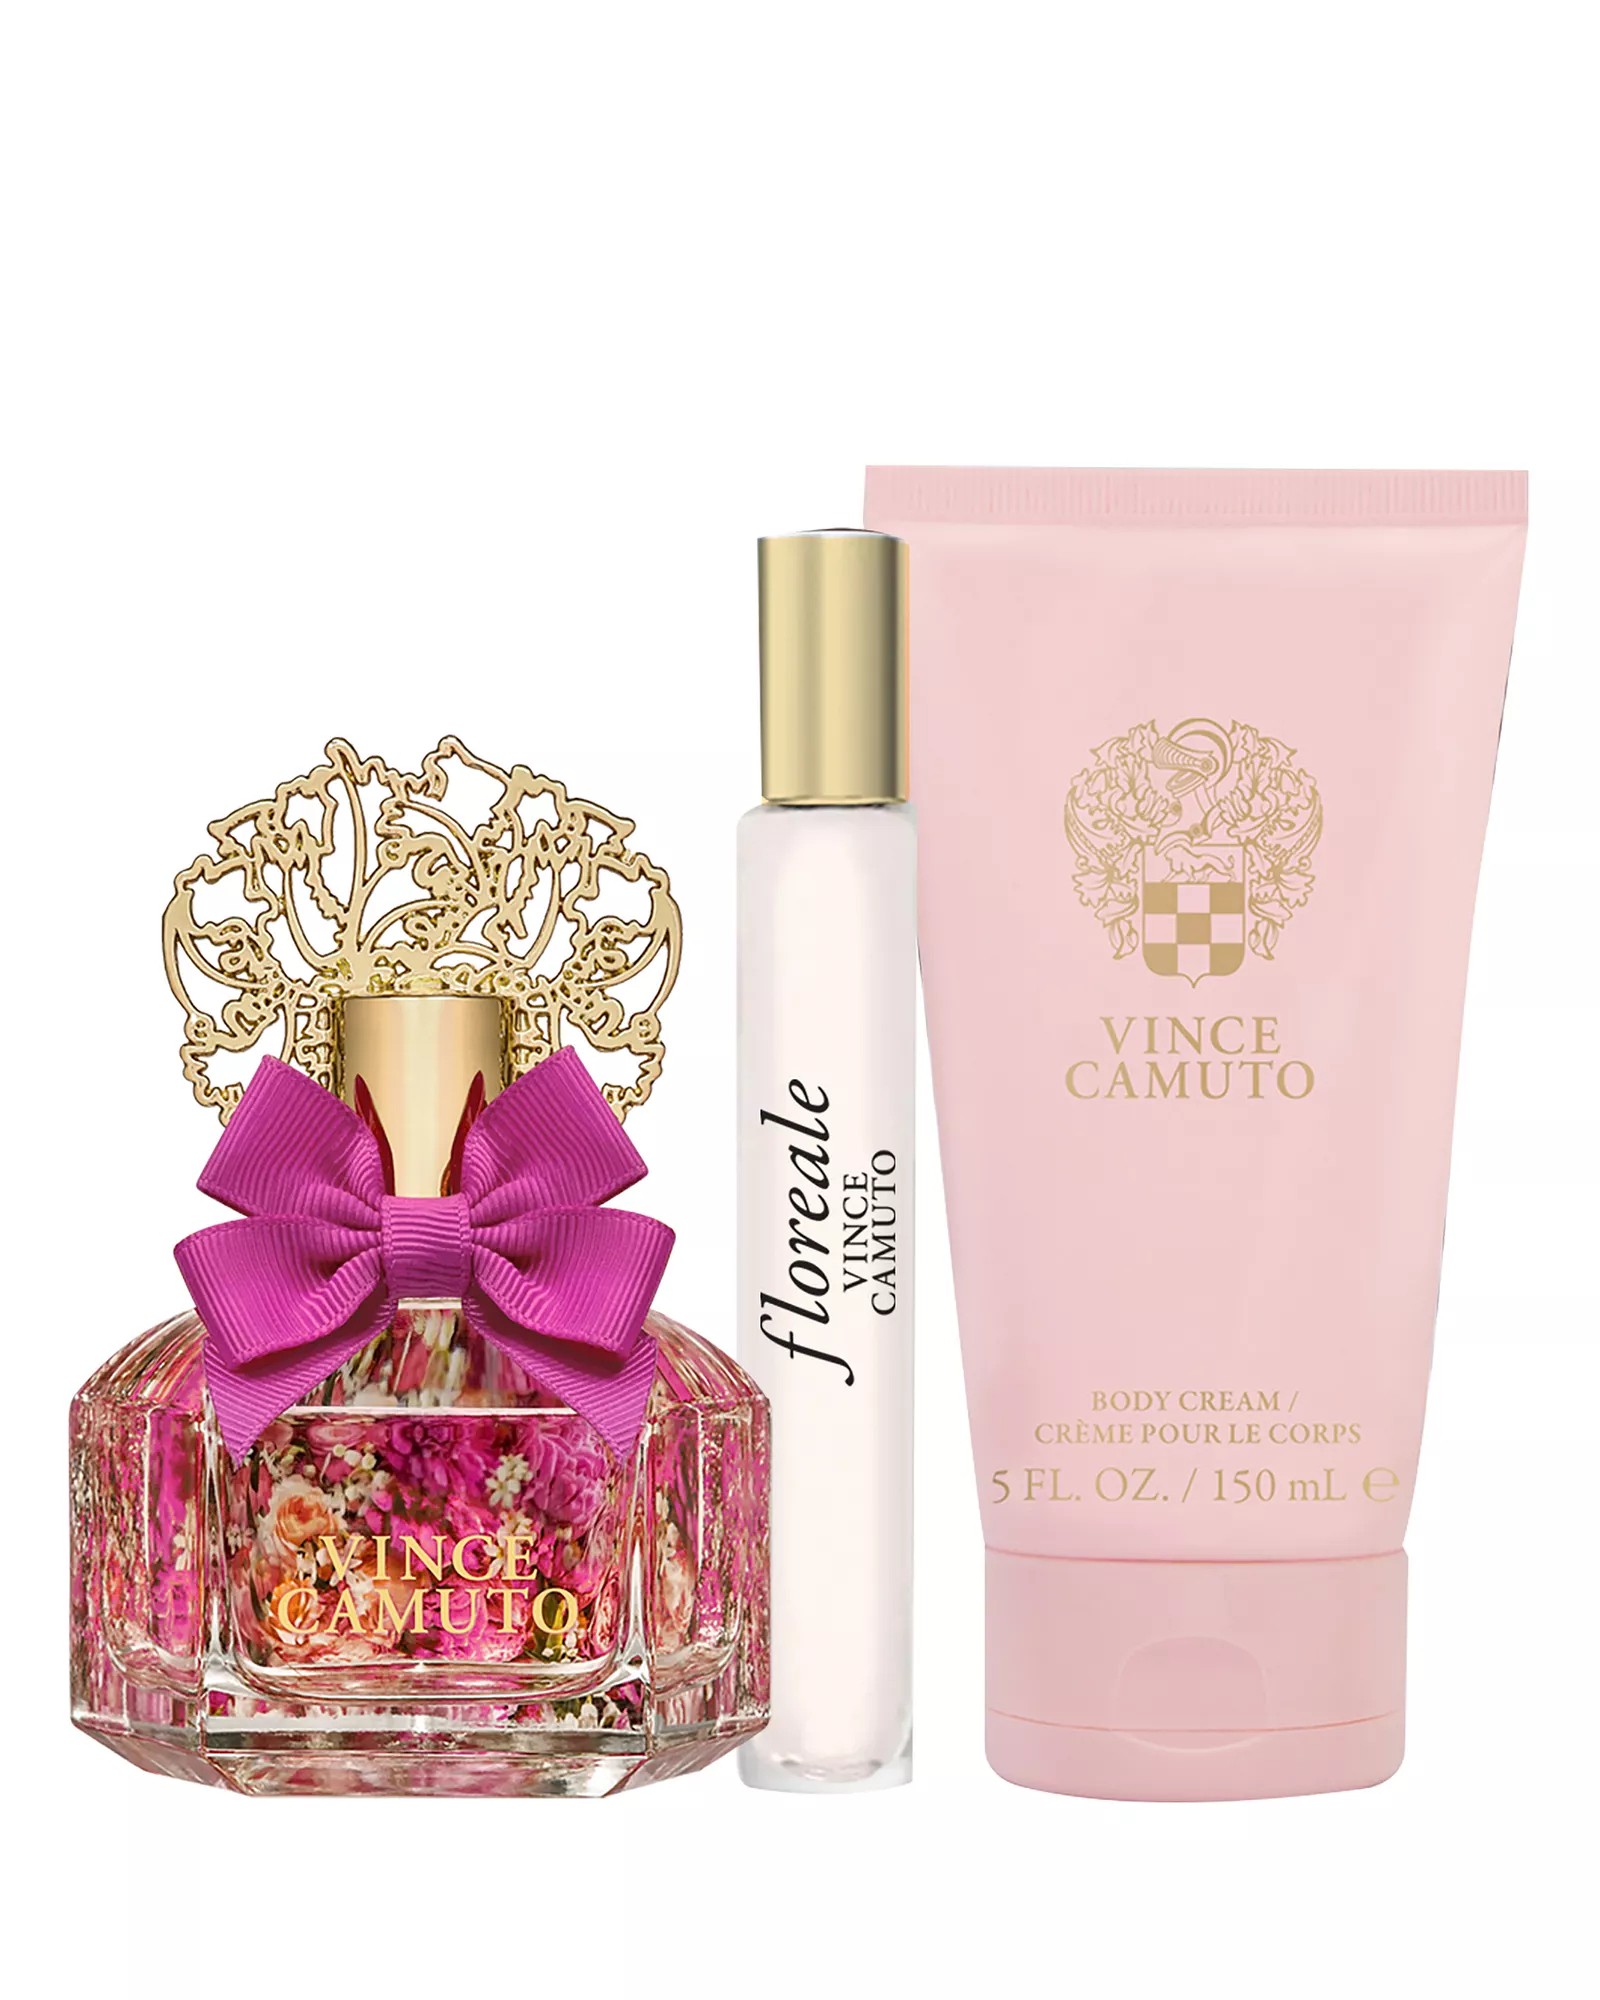 Vince Camuto Amore Eau De Parfum 3-Pc Gift Set ($105 Value